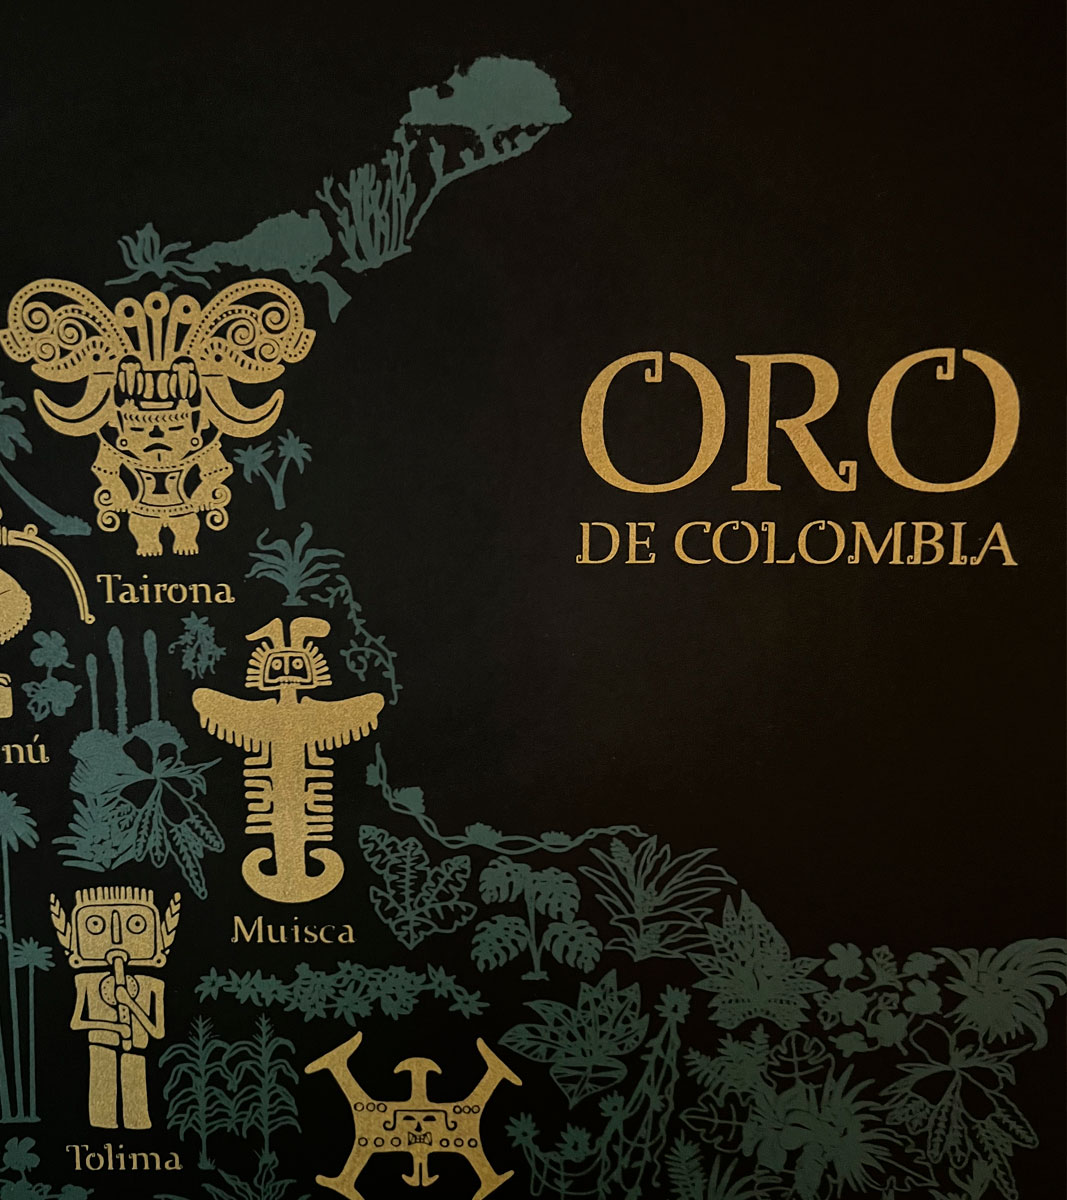 Mapa de Oro Colombia mapas de colombia mapa aves de colombia cuadros regalos souvenirs colombianos Colombia arte artesanías mapas de colombia postales decoracion ilustracion